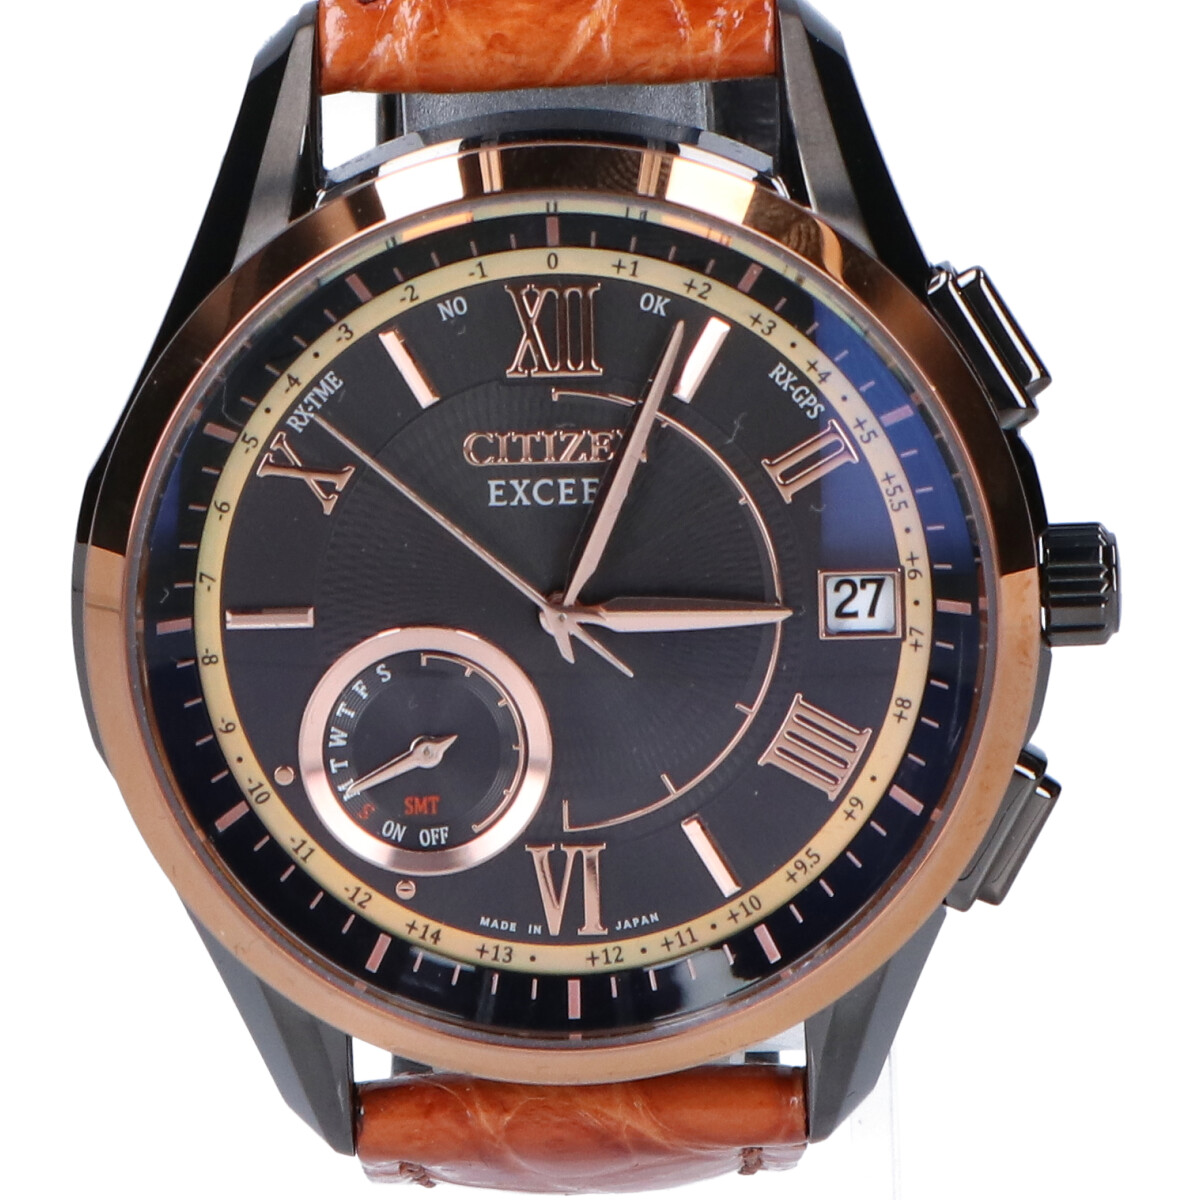 シチズンのCC3054-04E Cal.F150 EXCEED 100周年記念 600本限定モデル ダイレクトフライト エコ・ドライブ電波 腕時計の買取実績です。